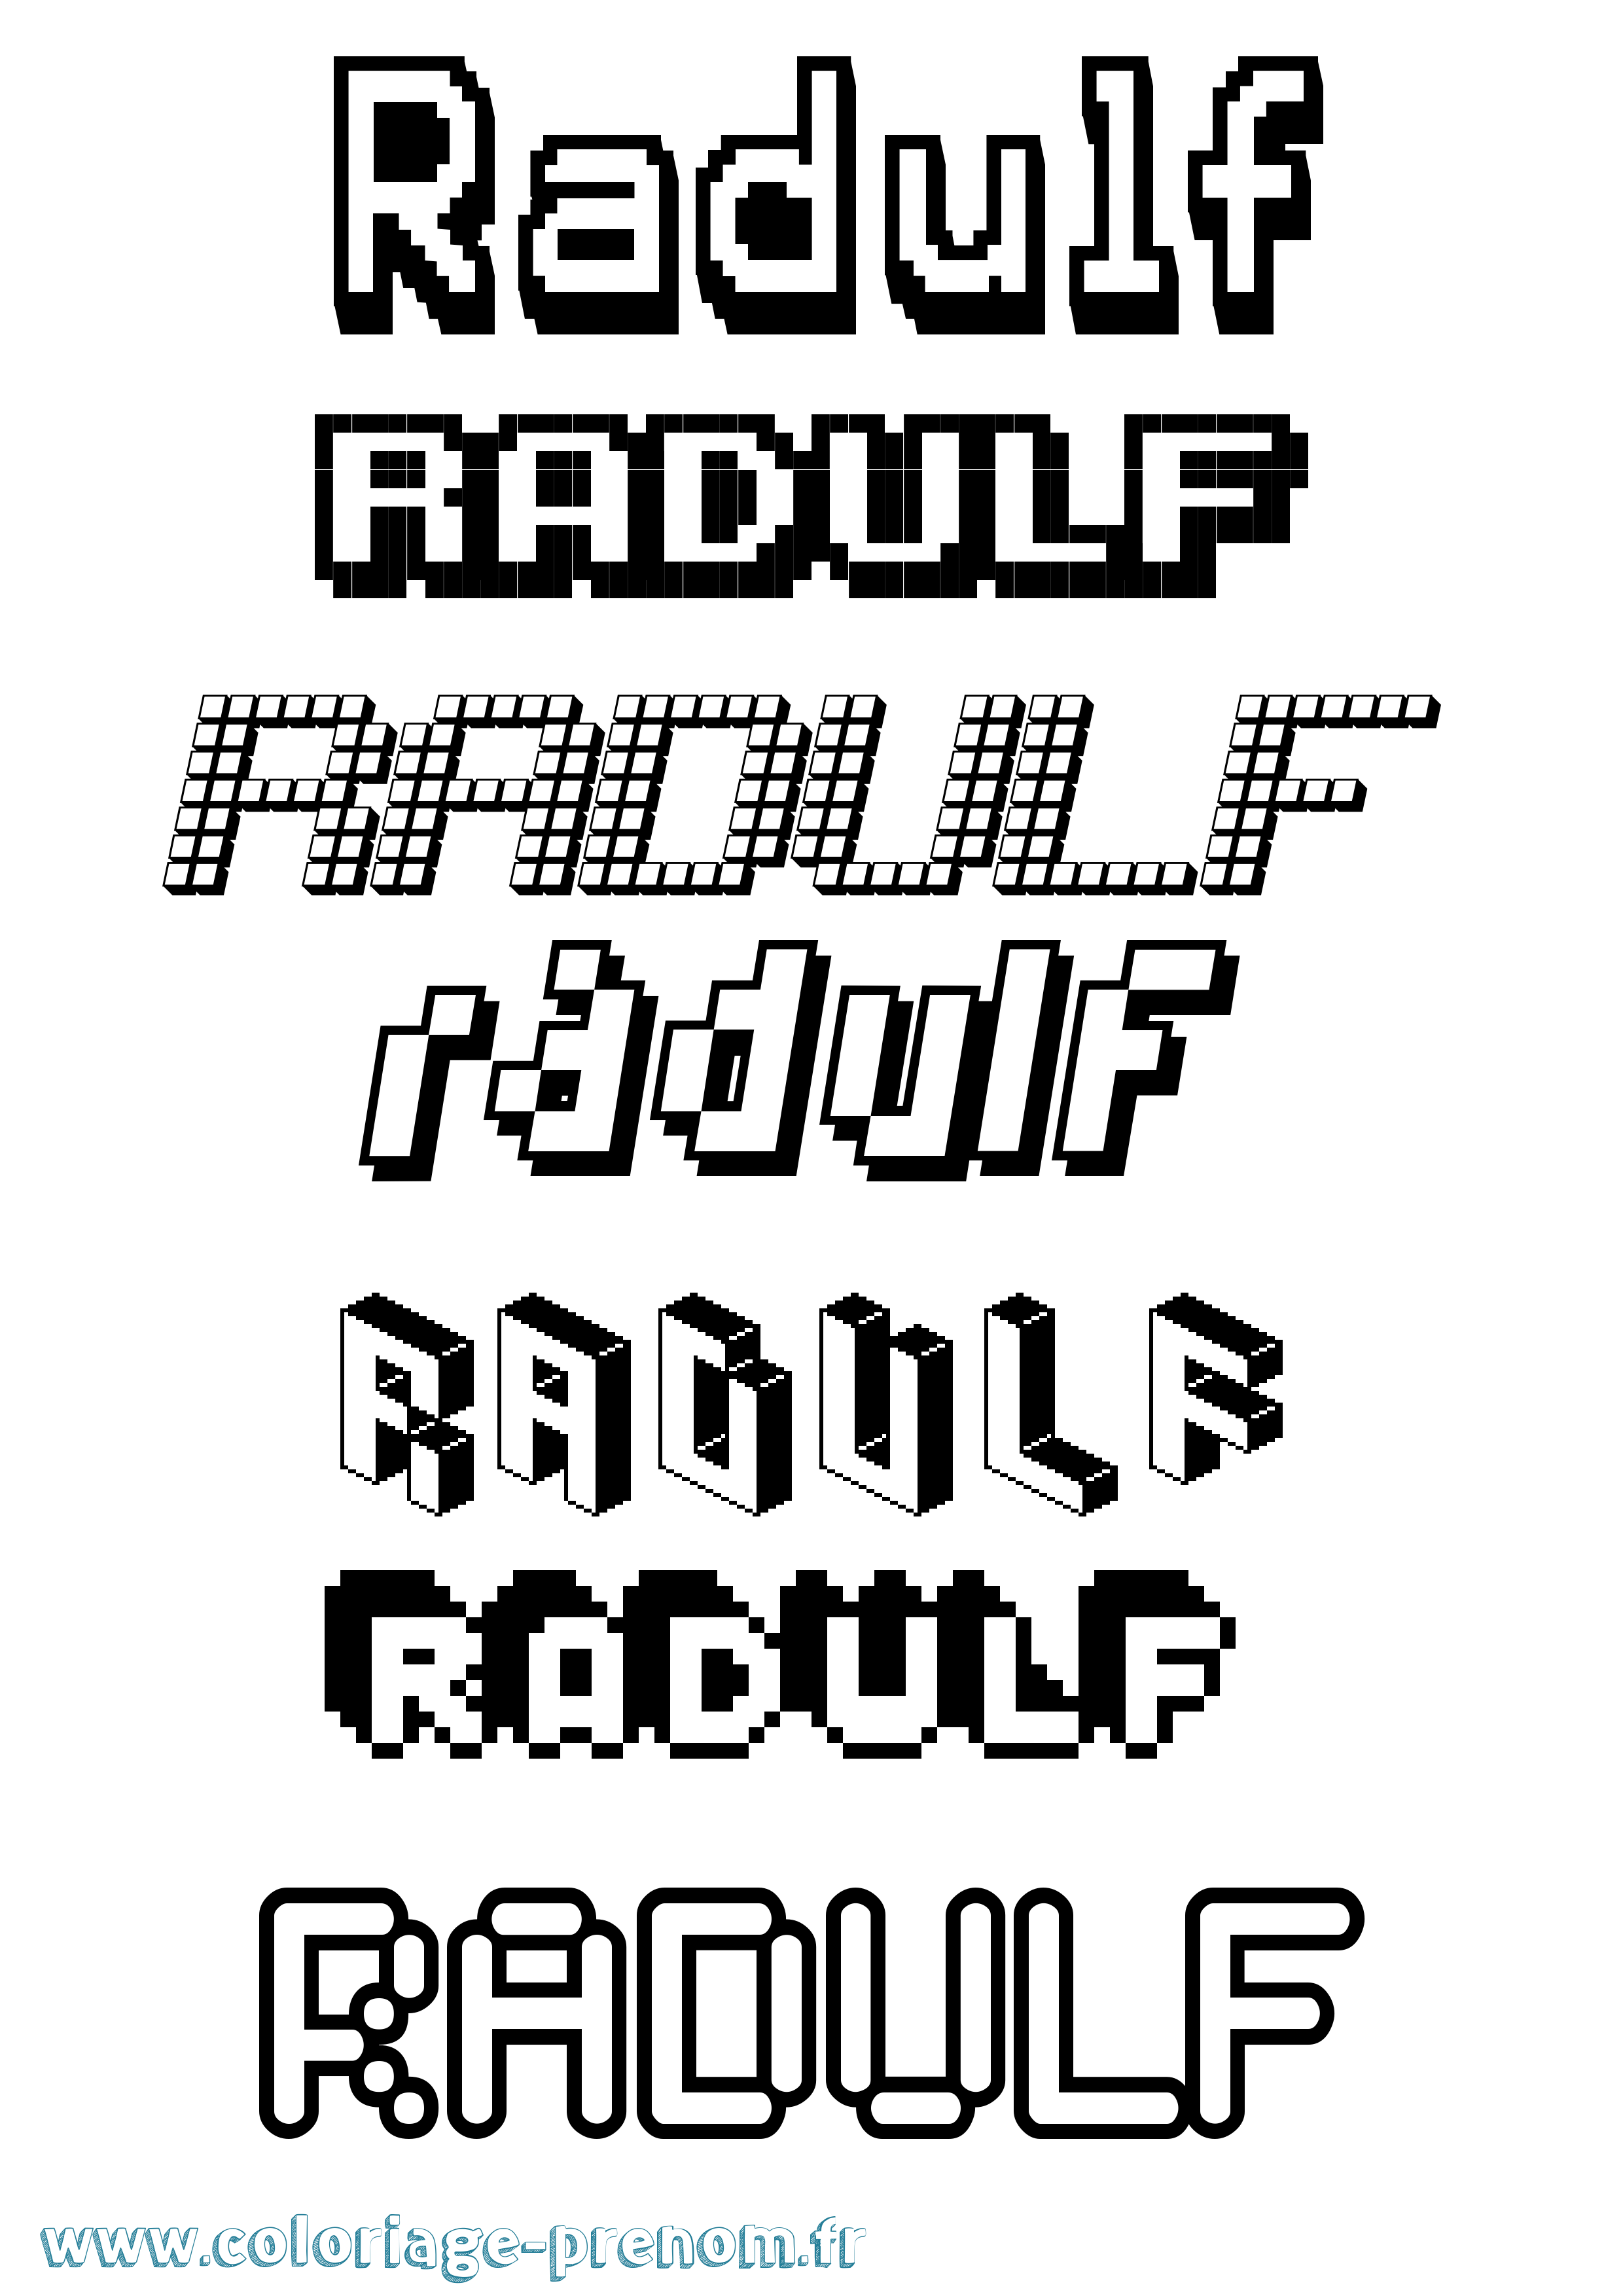 Coloriage prénom Radulf Pixel